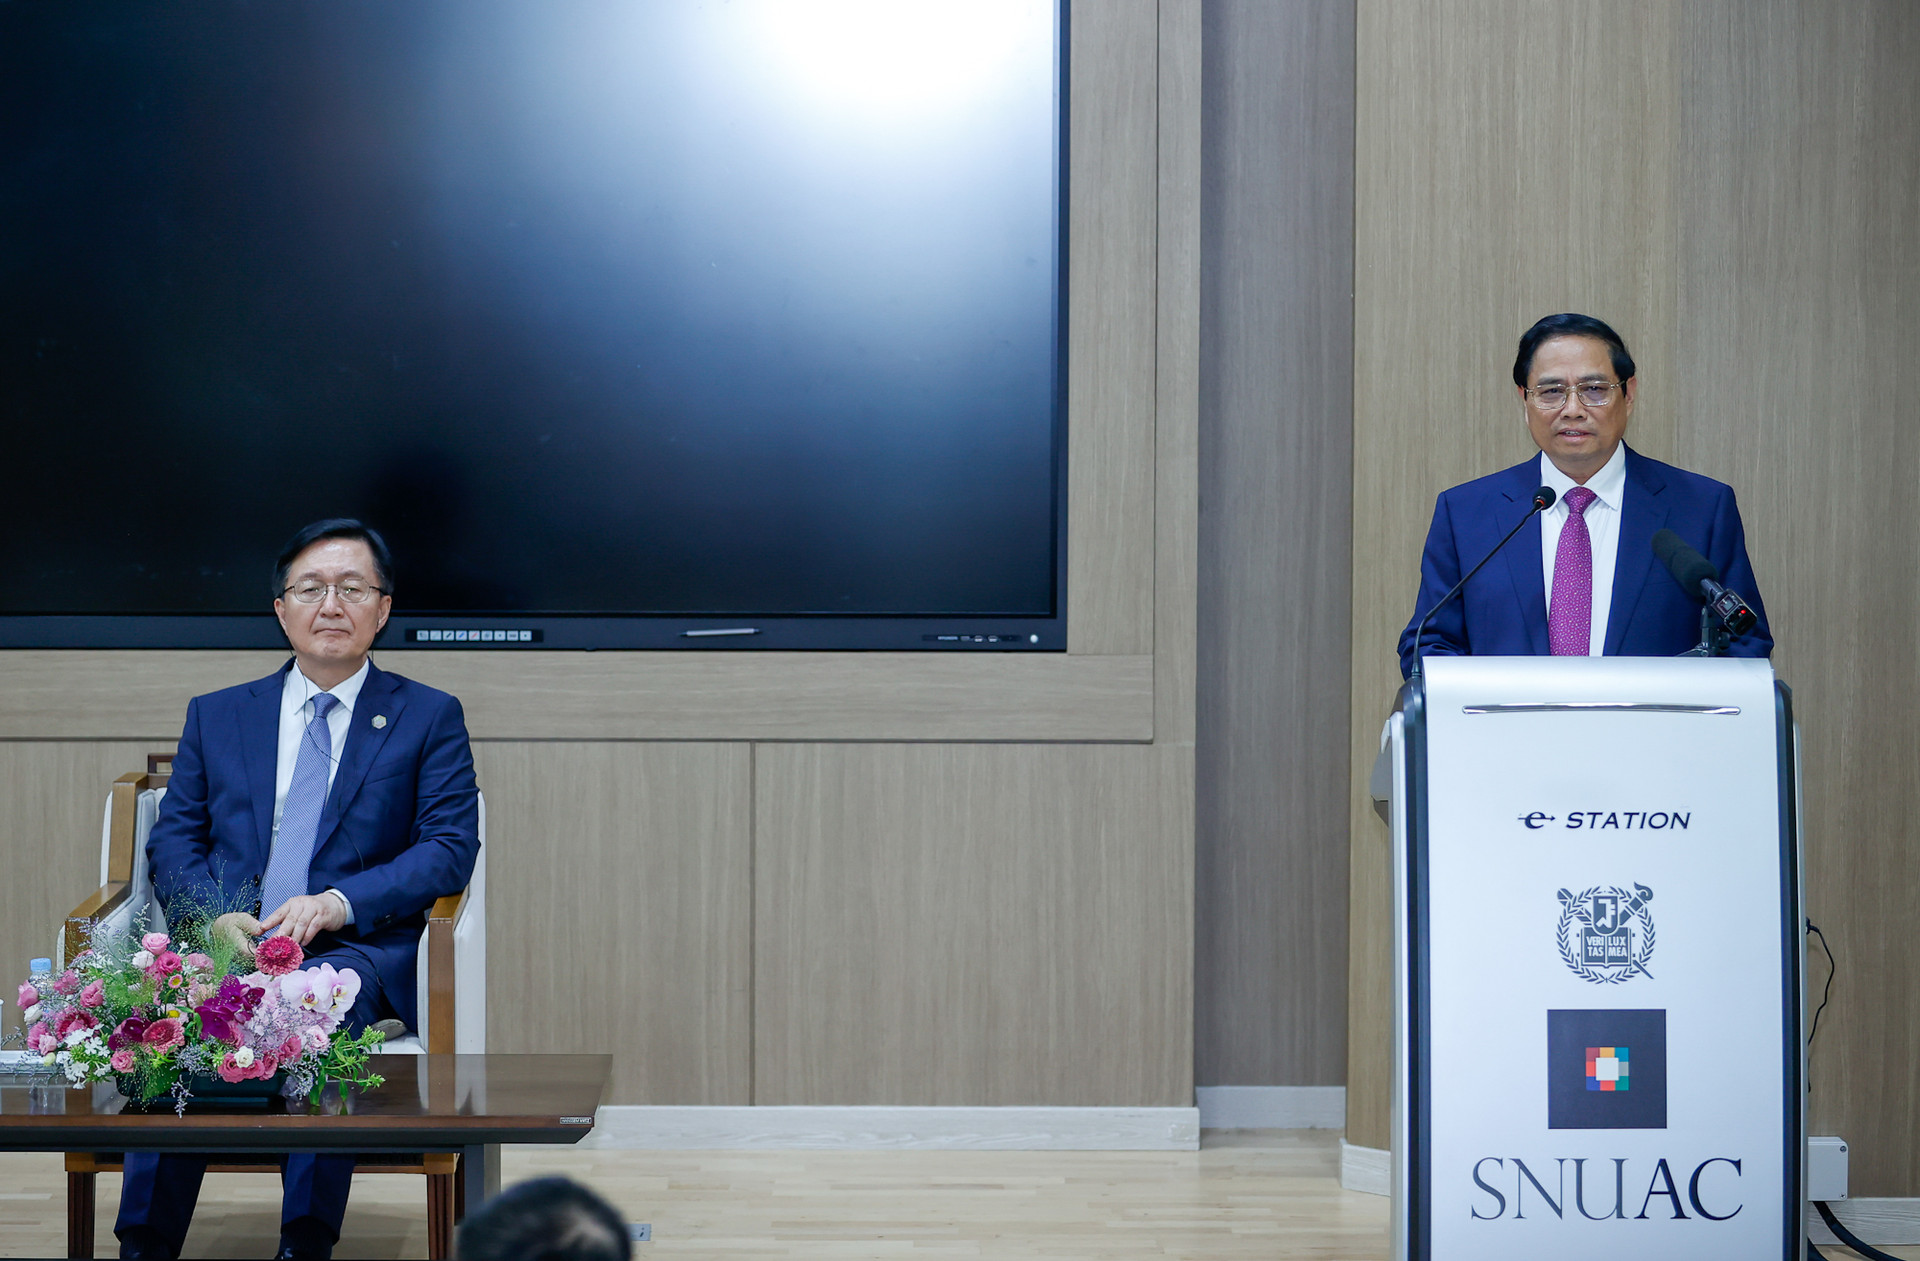 Thủ tướng gửi thông điệp quan trọng trong phát biểu chính sách tại Đại học Quốc gia của Hàn Quốc- Ảnh 4.